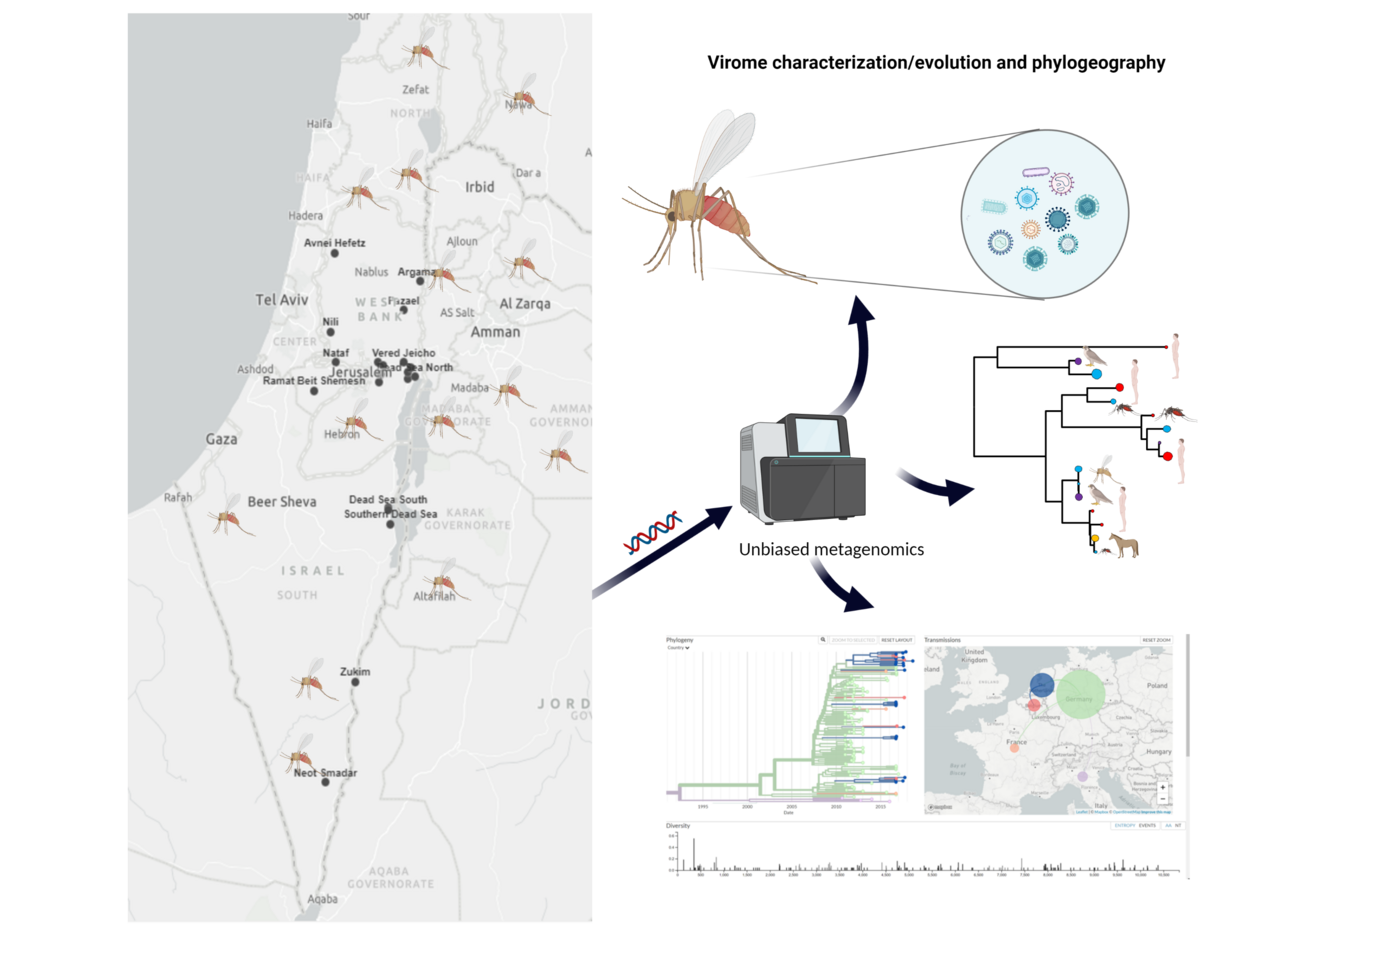 Eine Karte von Irsrael auf der linken Seite in die Mücken eingezeichnet wurden. Auf der rechten Seite ist eine beispielhafte Auswertung der Mücken DNA zu sehen, die zu unterschiedlichen beispielhaften Auswertungen führt.